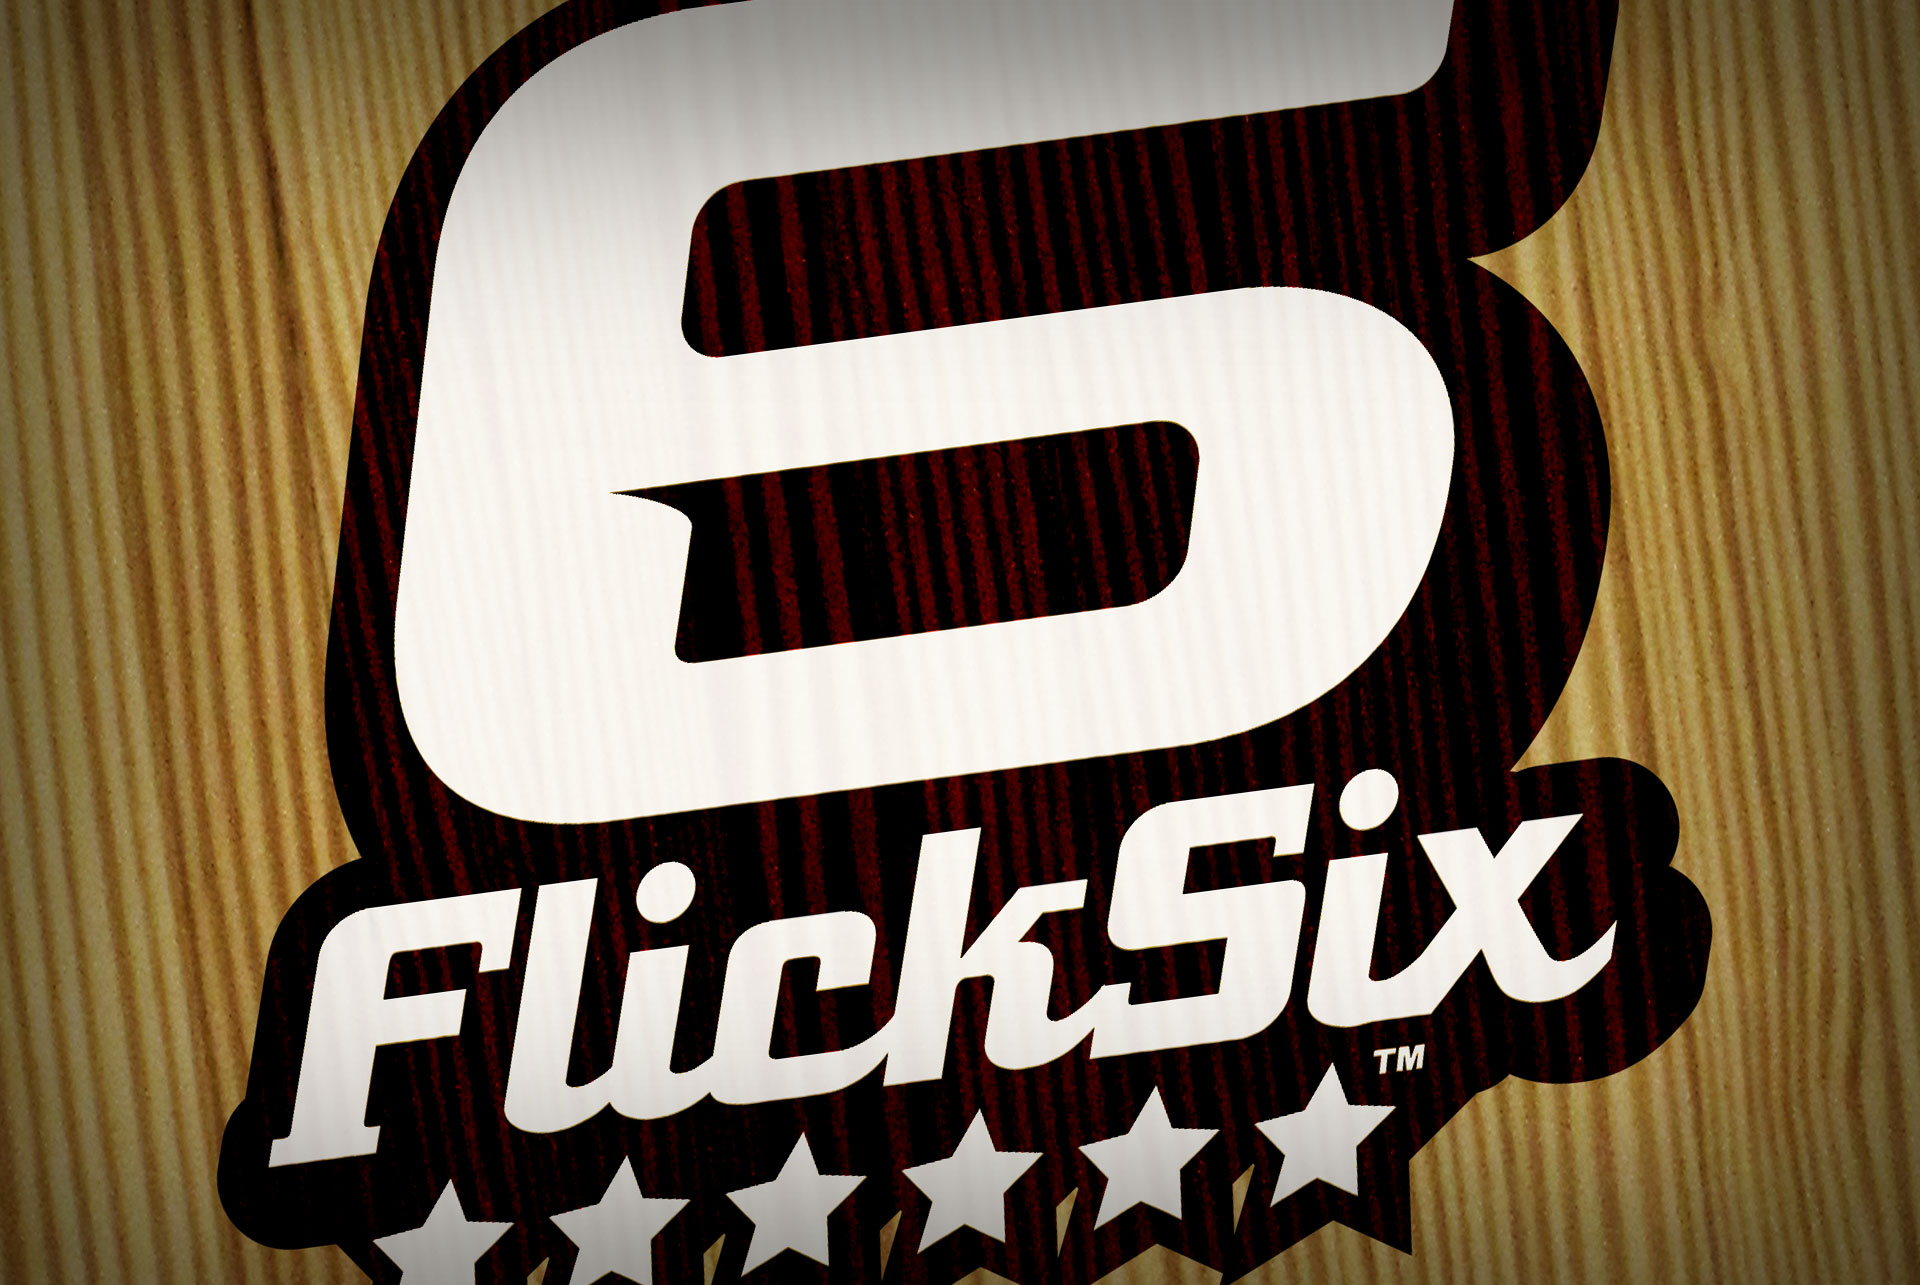 FlickSix™ by Flickshot™